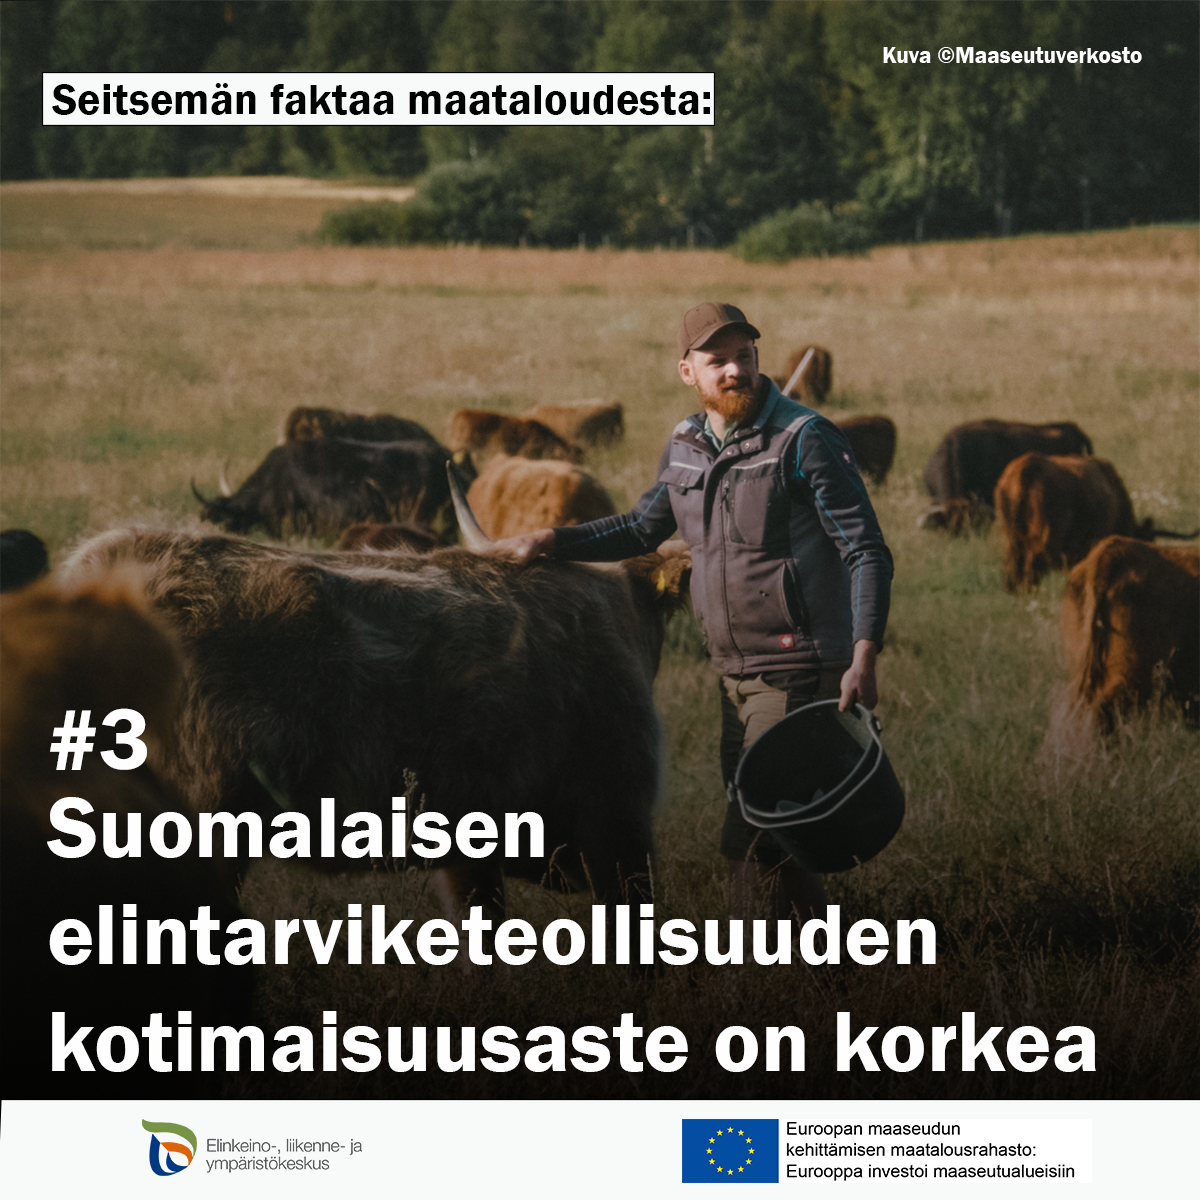 Mies ja ylämaankarjaa. Teksti: 7 faktaa maataloudesta: #3:Suomalaisen elintarviketeollisuuden kotimaisuusaste on korkea 